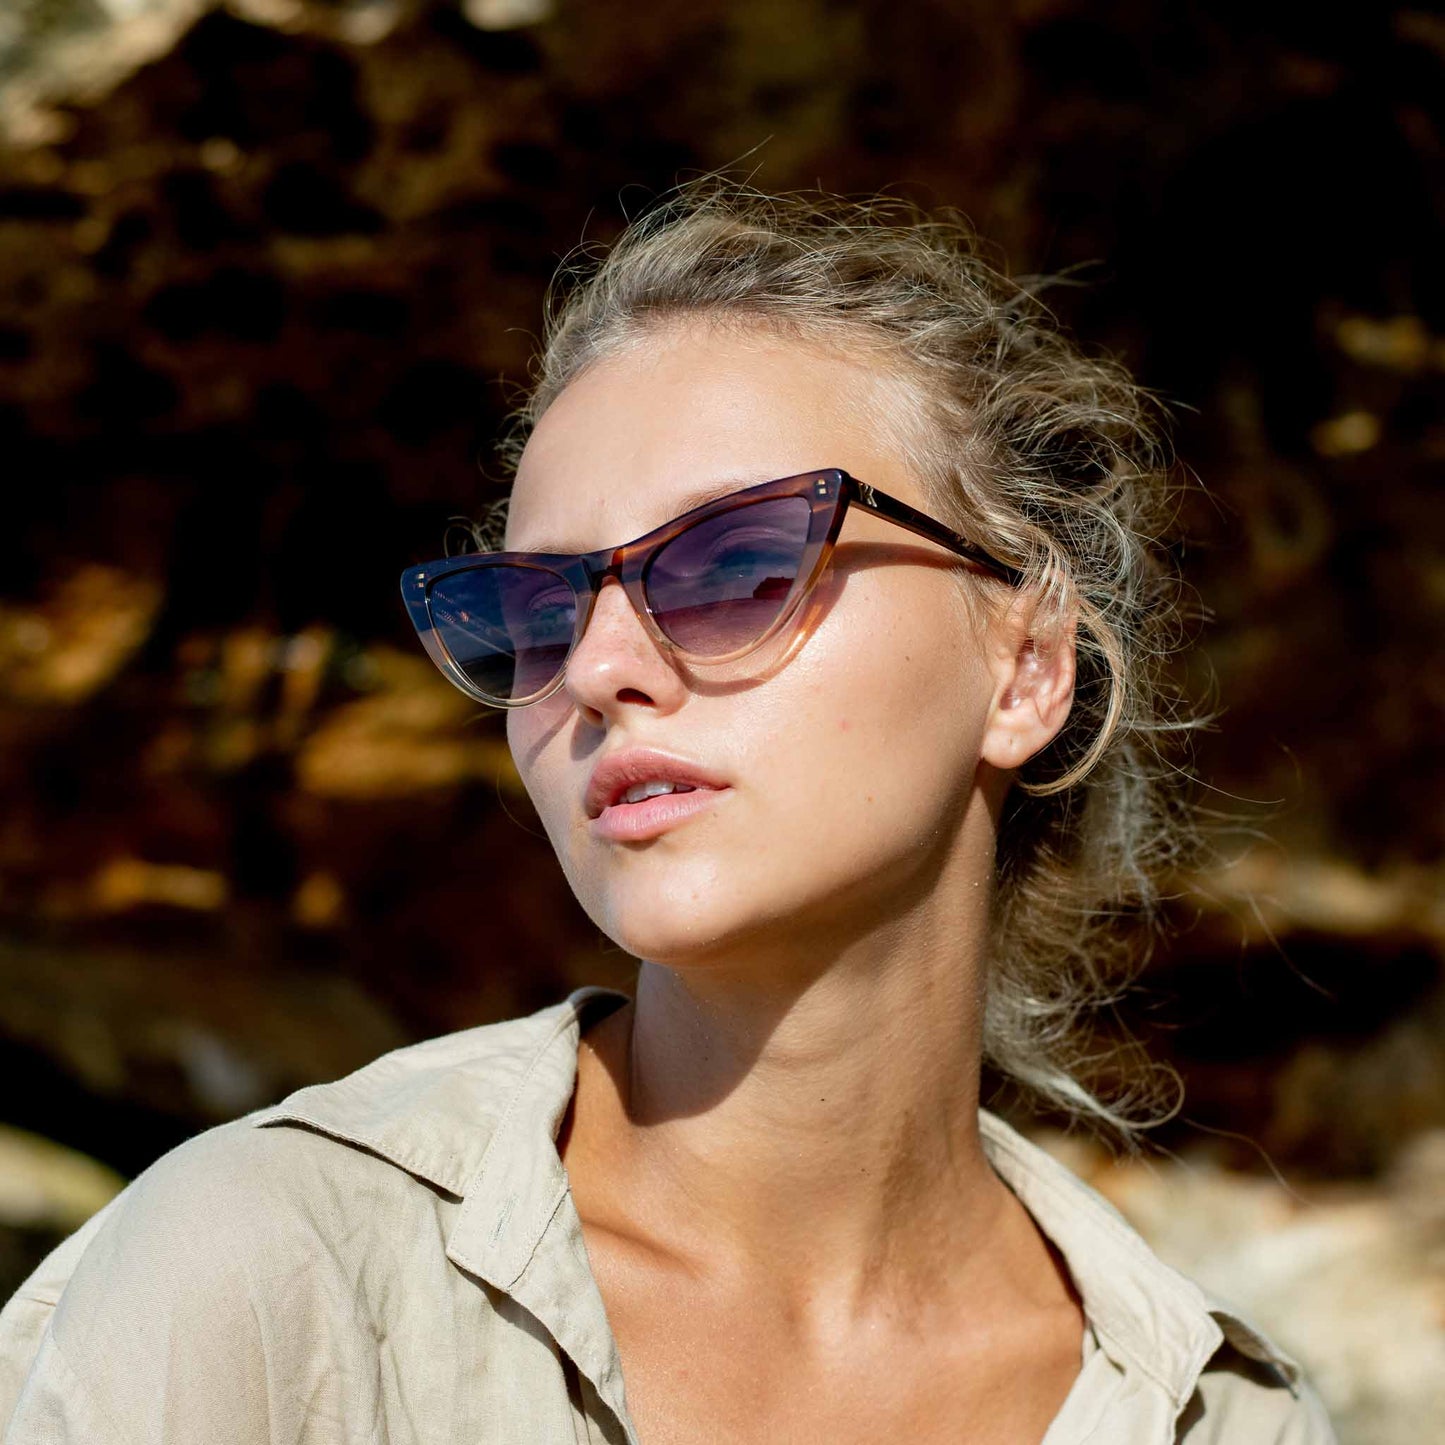 Woman wearing Mokki sunglasses